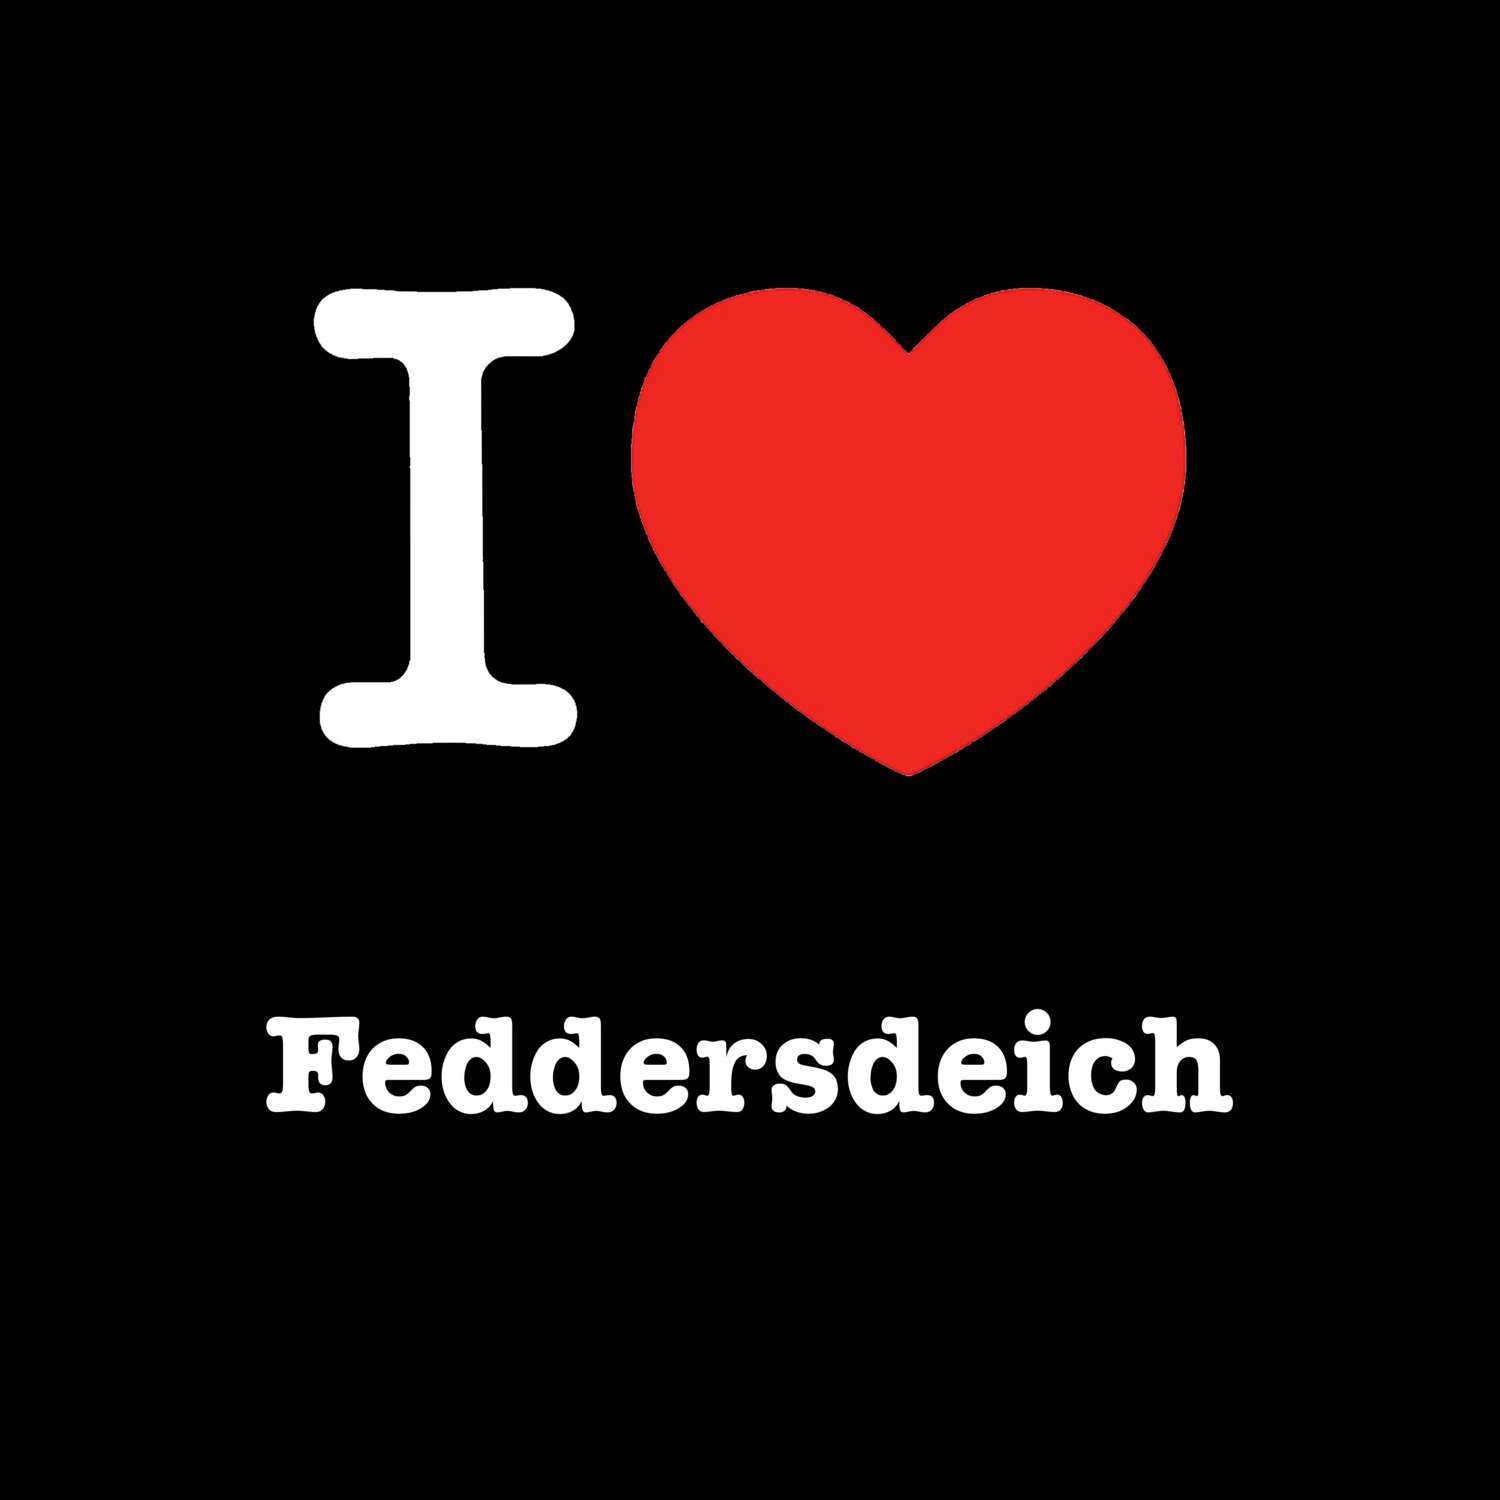 Feddersdeich T-Shirt »I love«